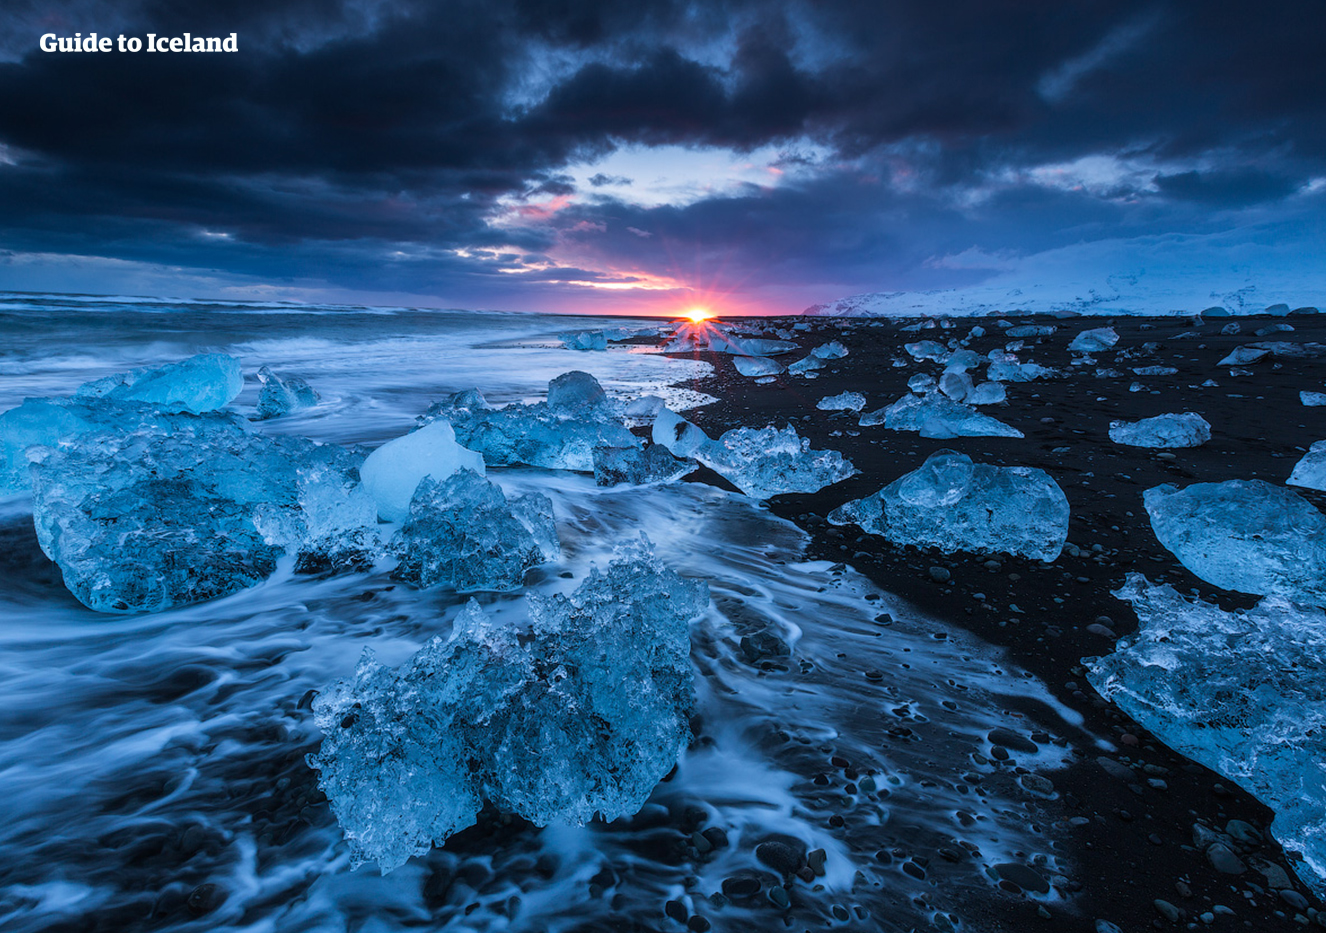 En un viaje en coche por tu cuenta en invierno, puedes visitar la Playa de los Diamantes por la noche y ver cómo se pone el sol entre los brillantes icebergs.